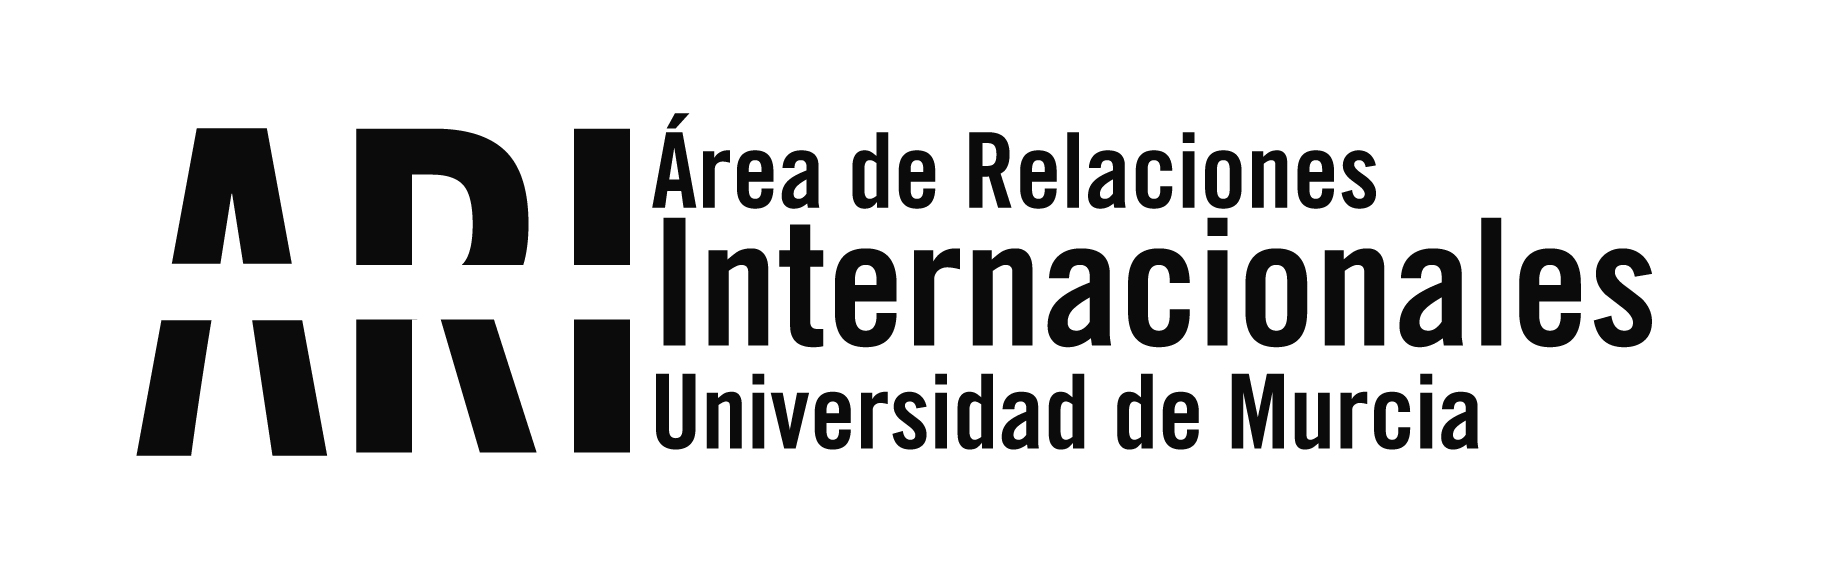 Convocatoria de lectorados MAEC-AECID en universidades extranjeras para el curso 2015/2016 - Área de Relaciones Internacionales